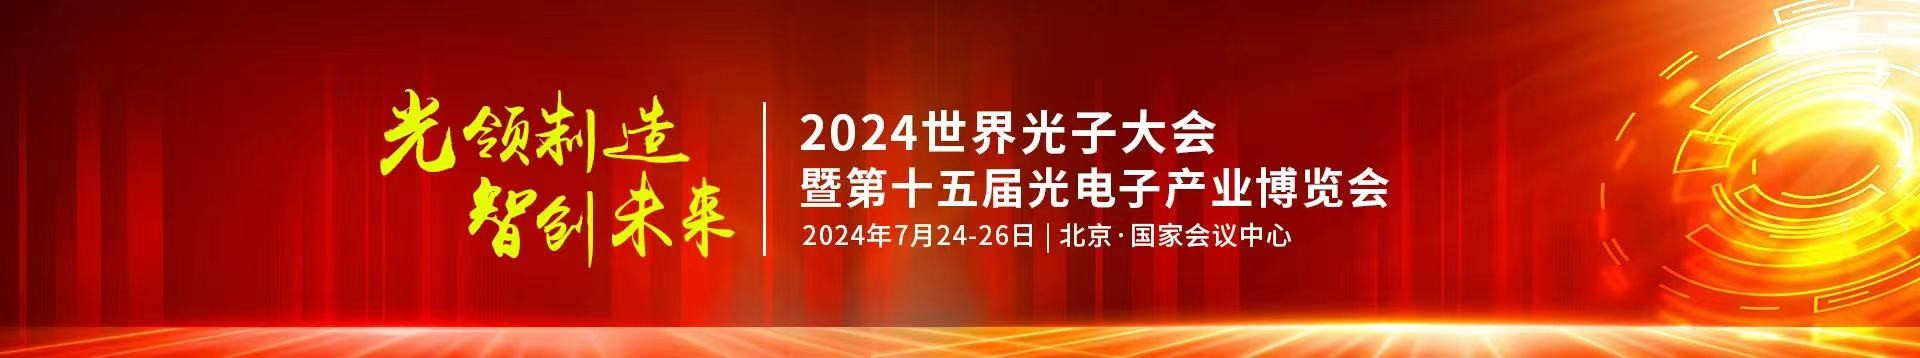 亚美am8ag公司受邀参加2024年第十五届光电子产业博览会